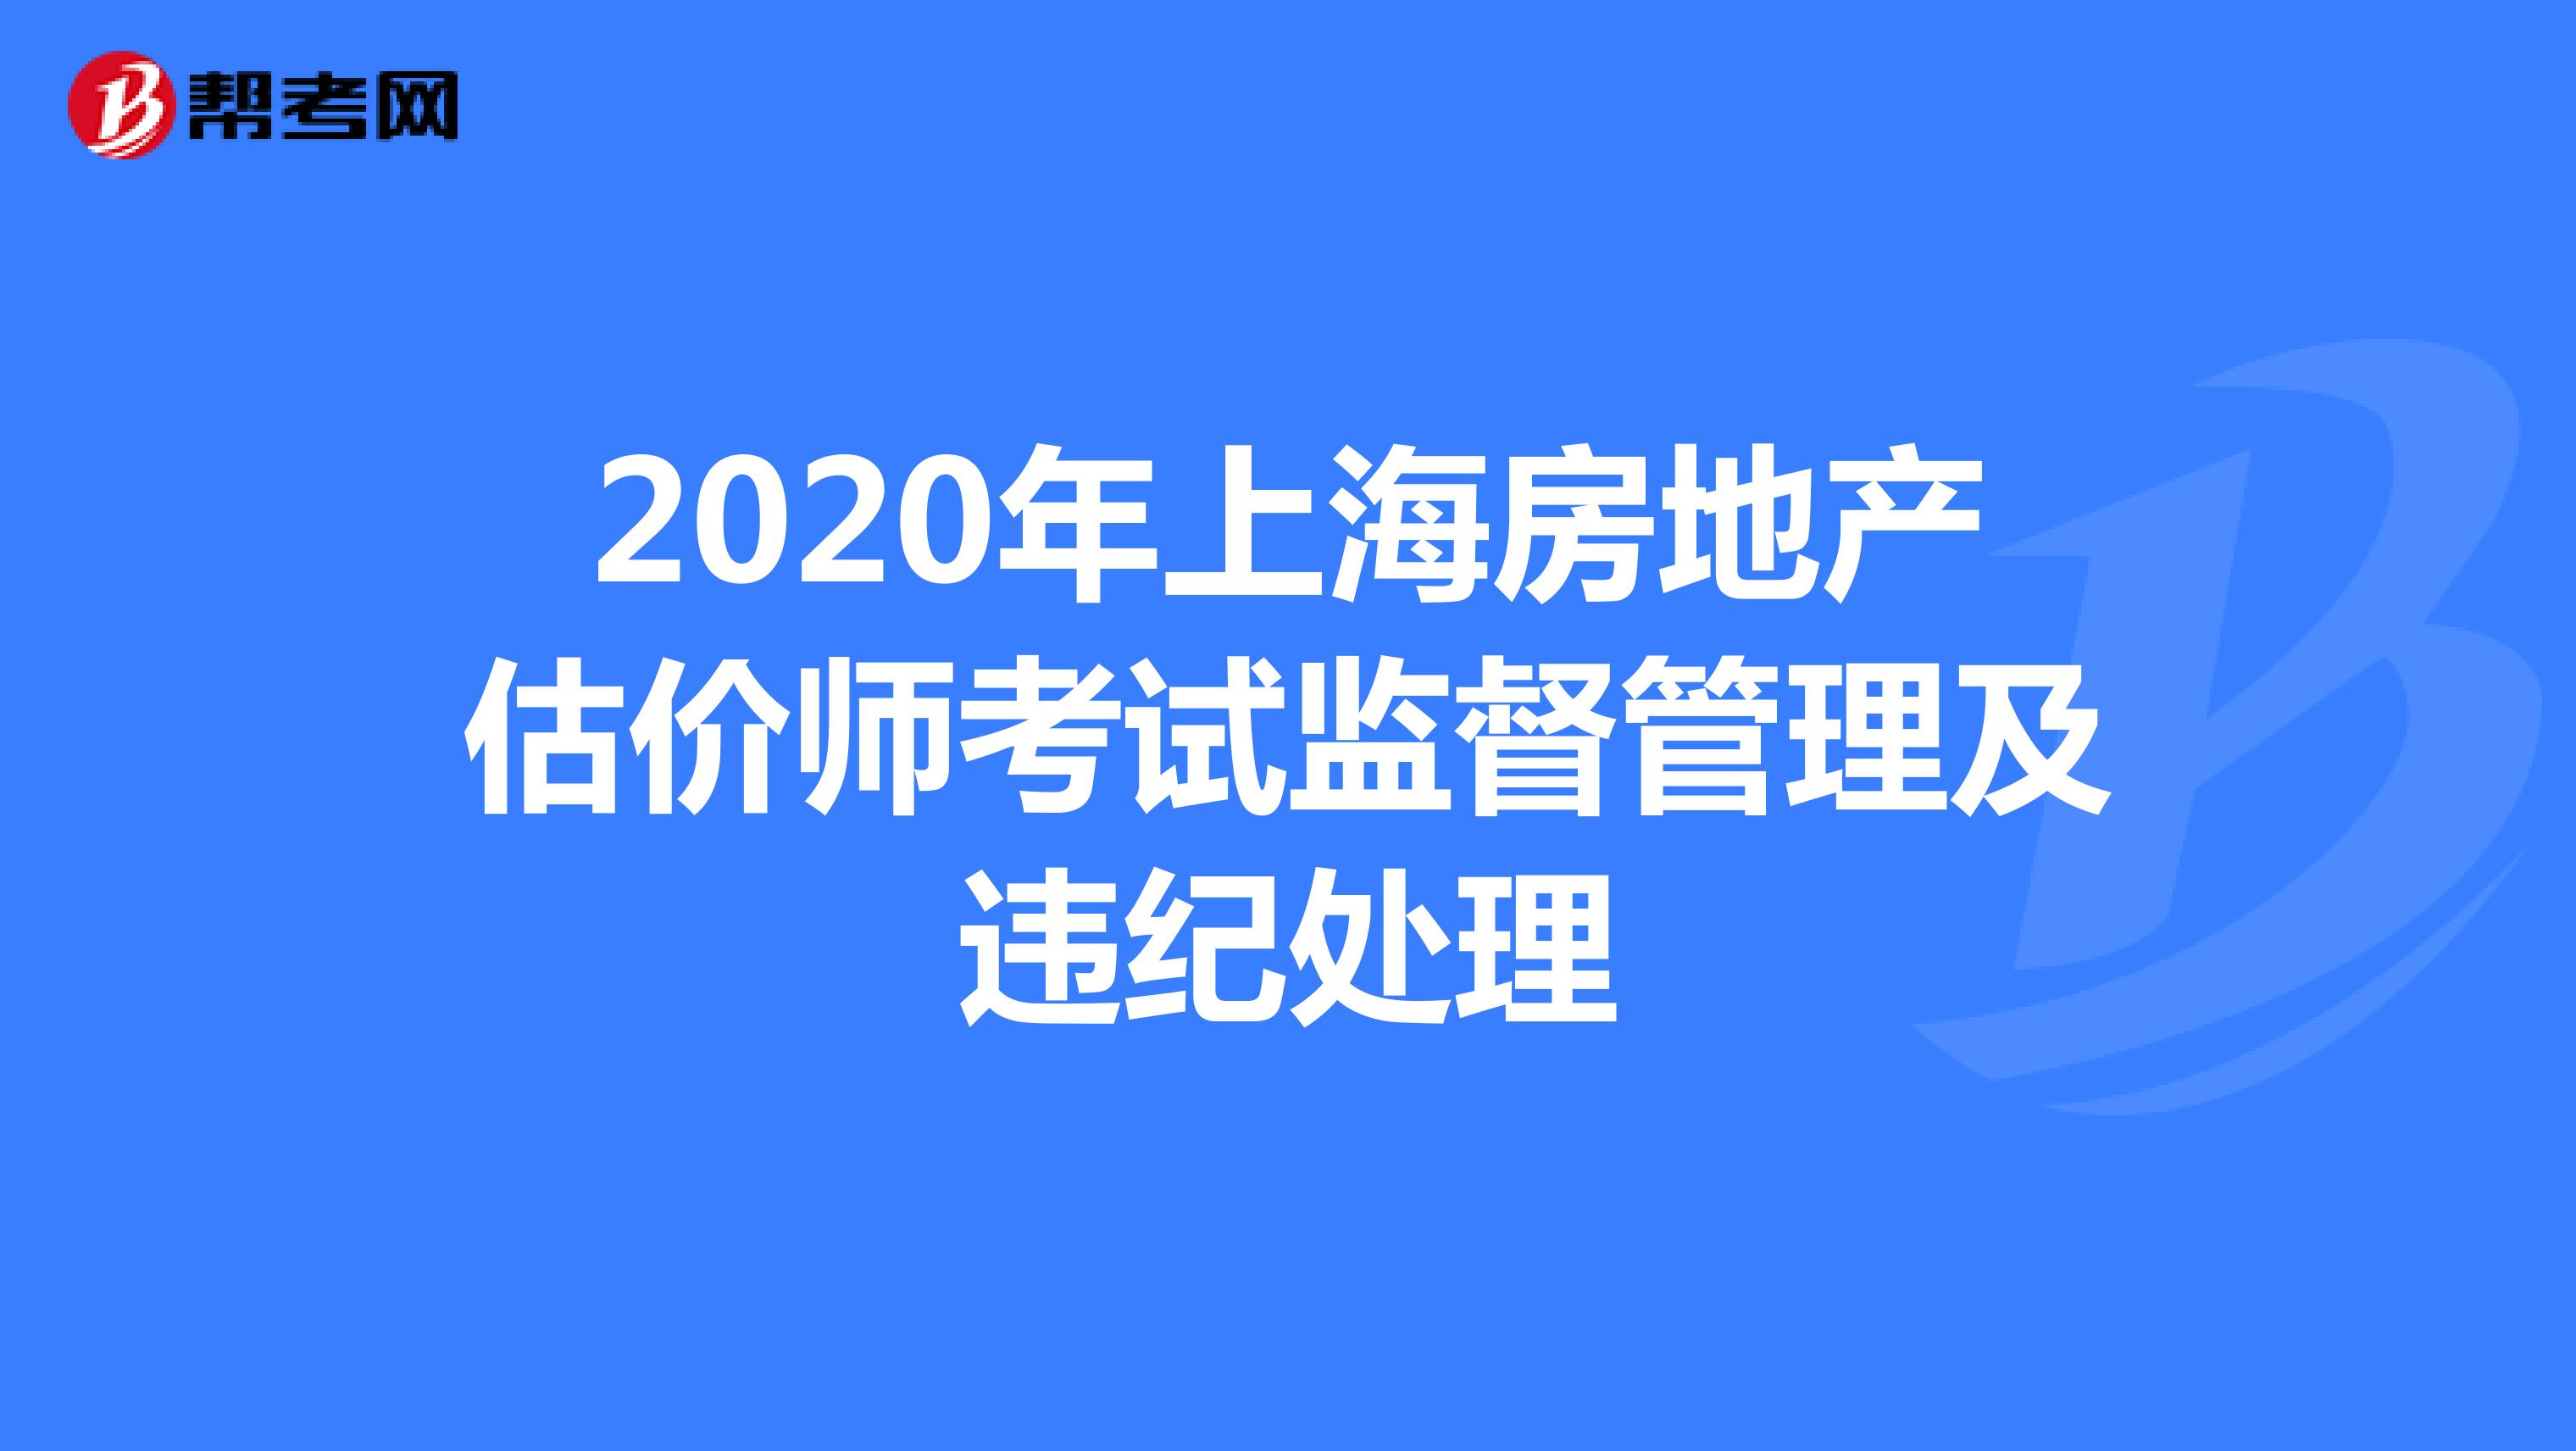 2020年上海房地产估价师考试监督管理及违纪处理